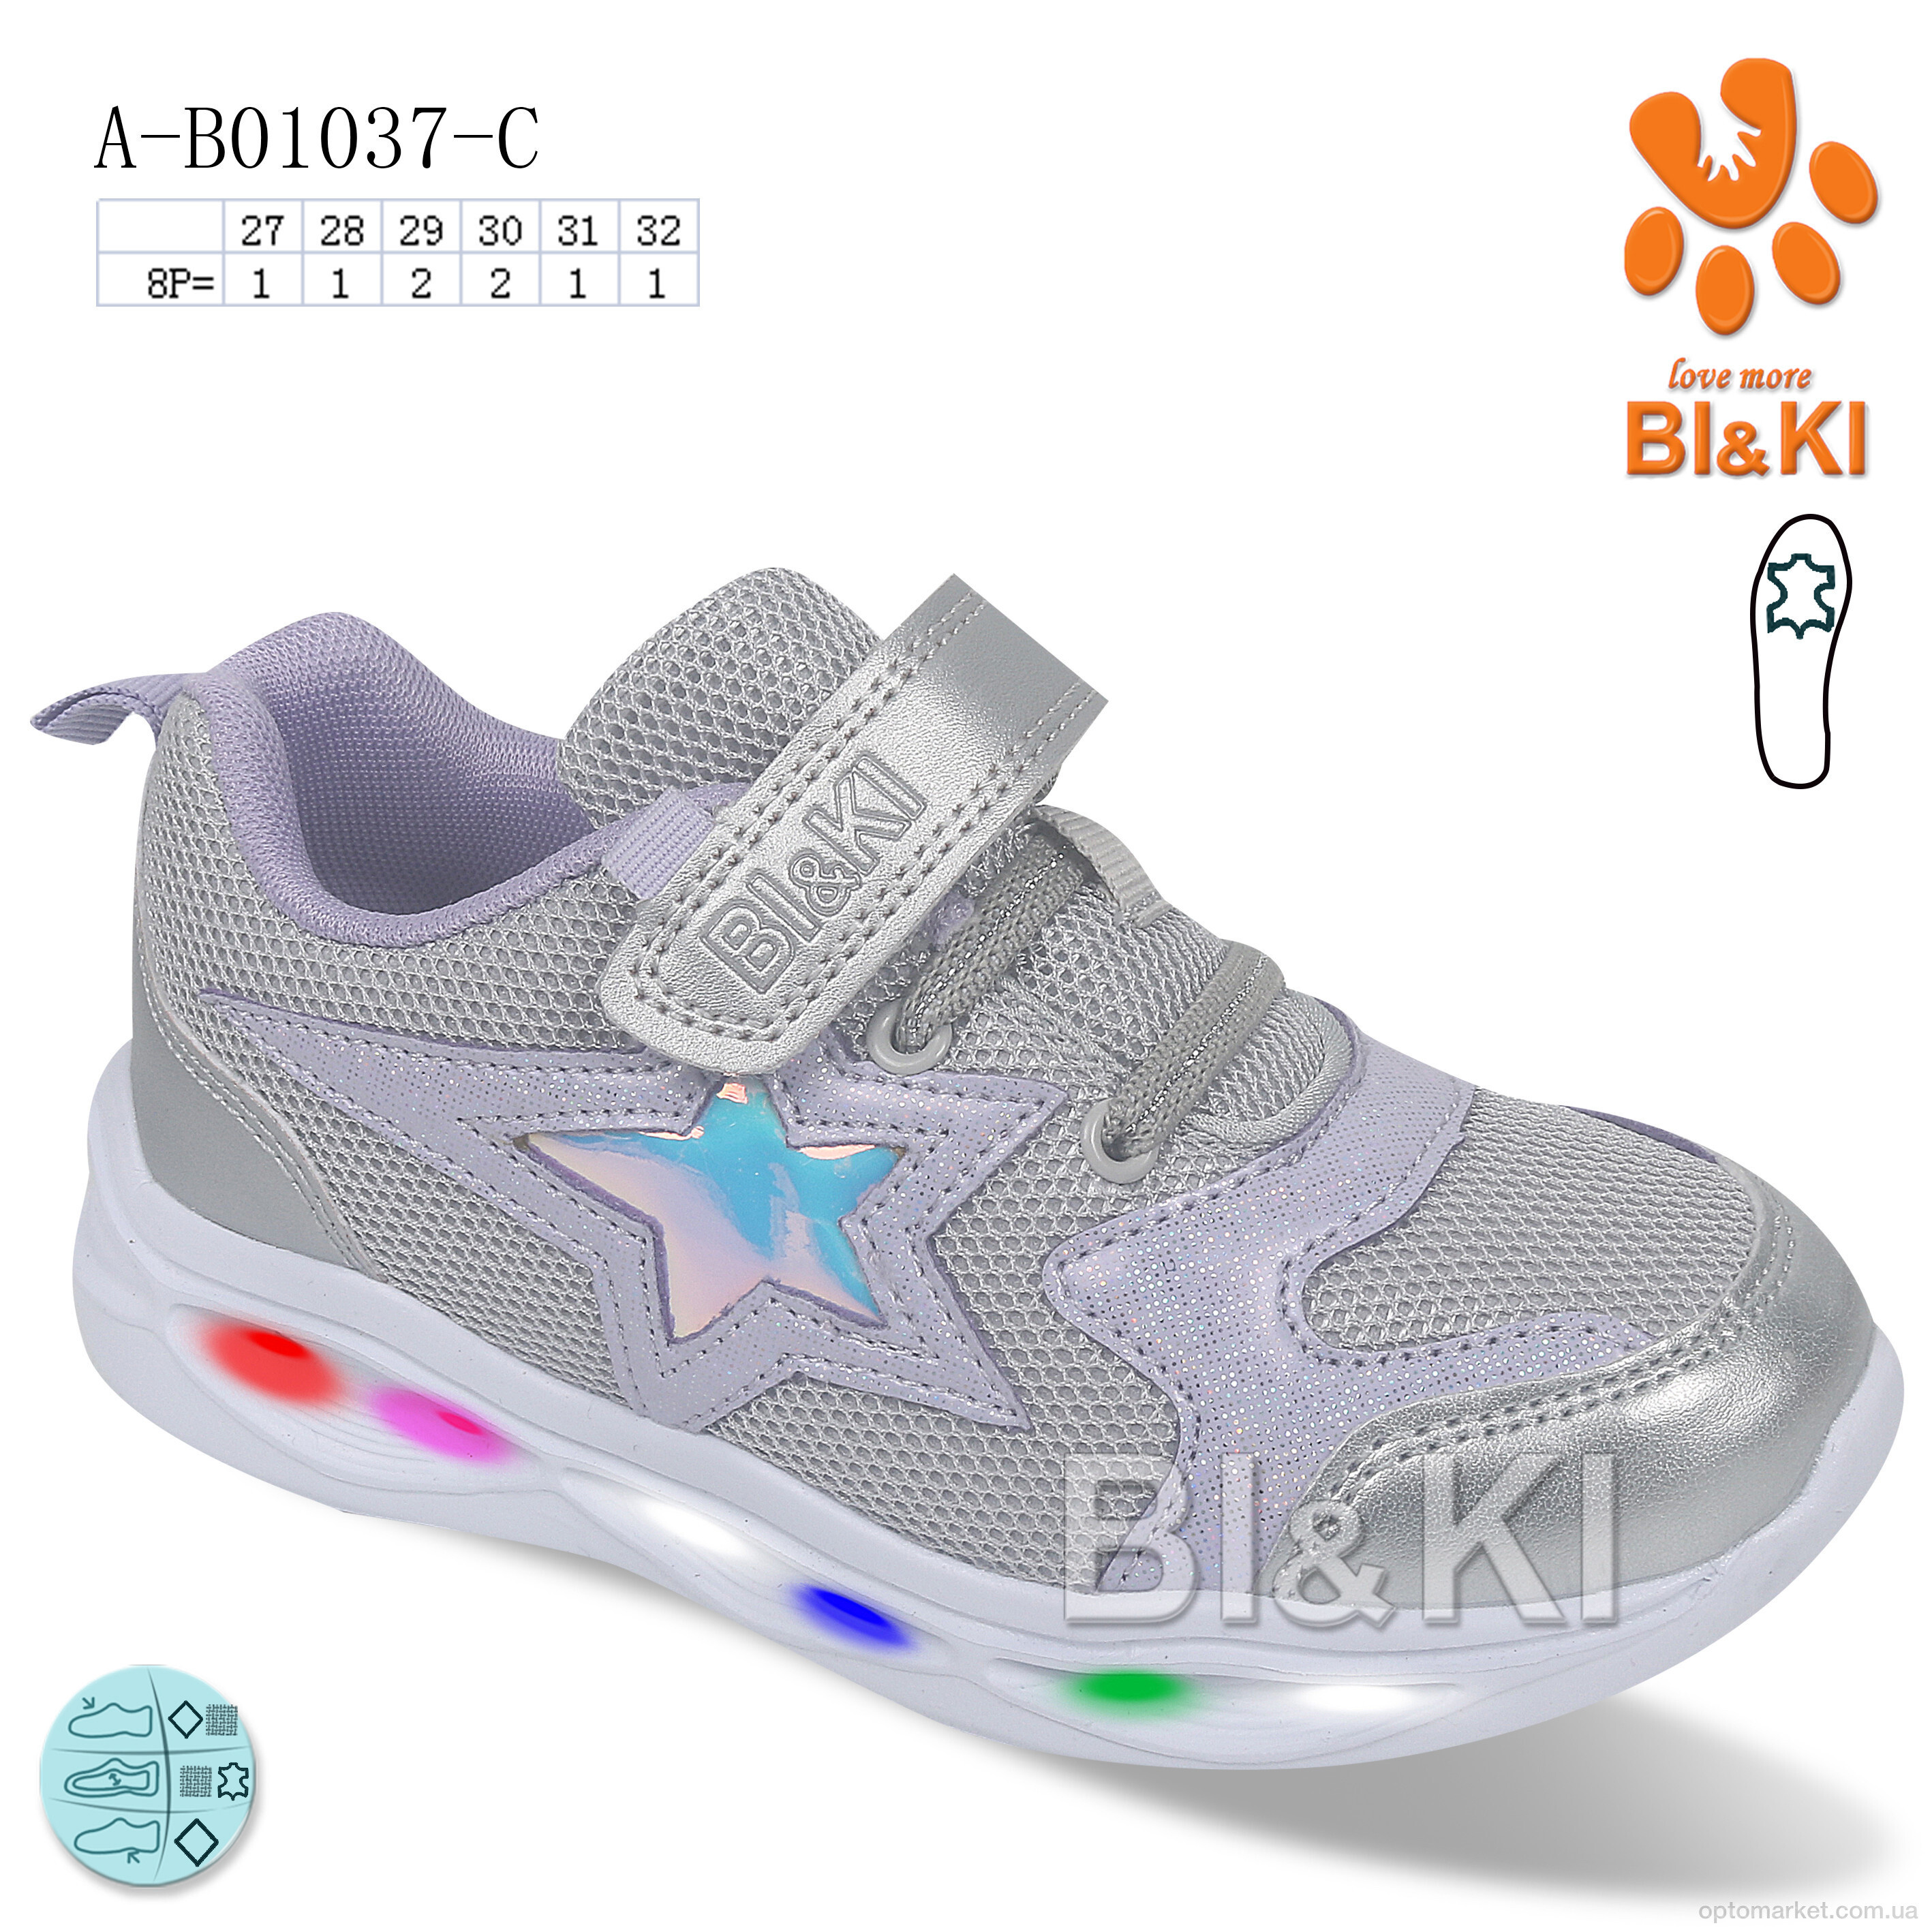 Купить Кросівки дитячі A-B01037-C LED Bi&Ki срібний, фото 1